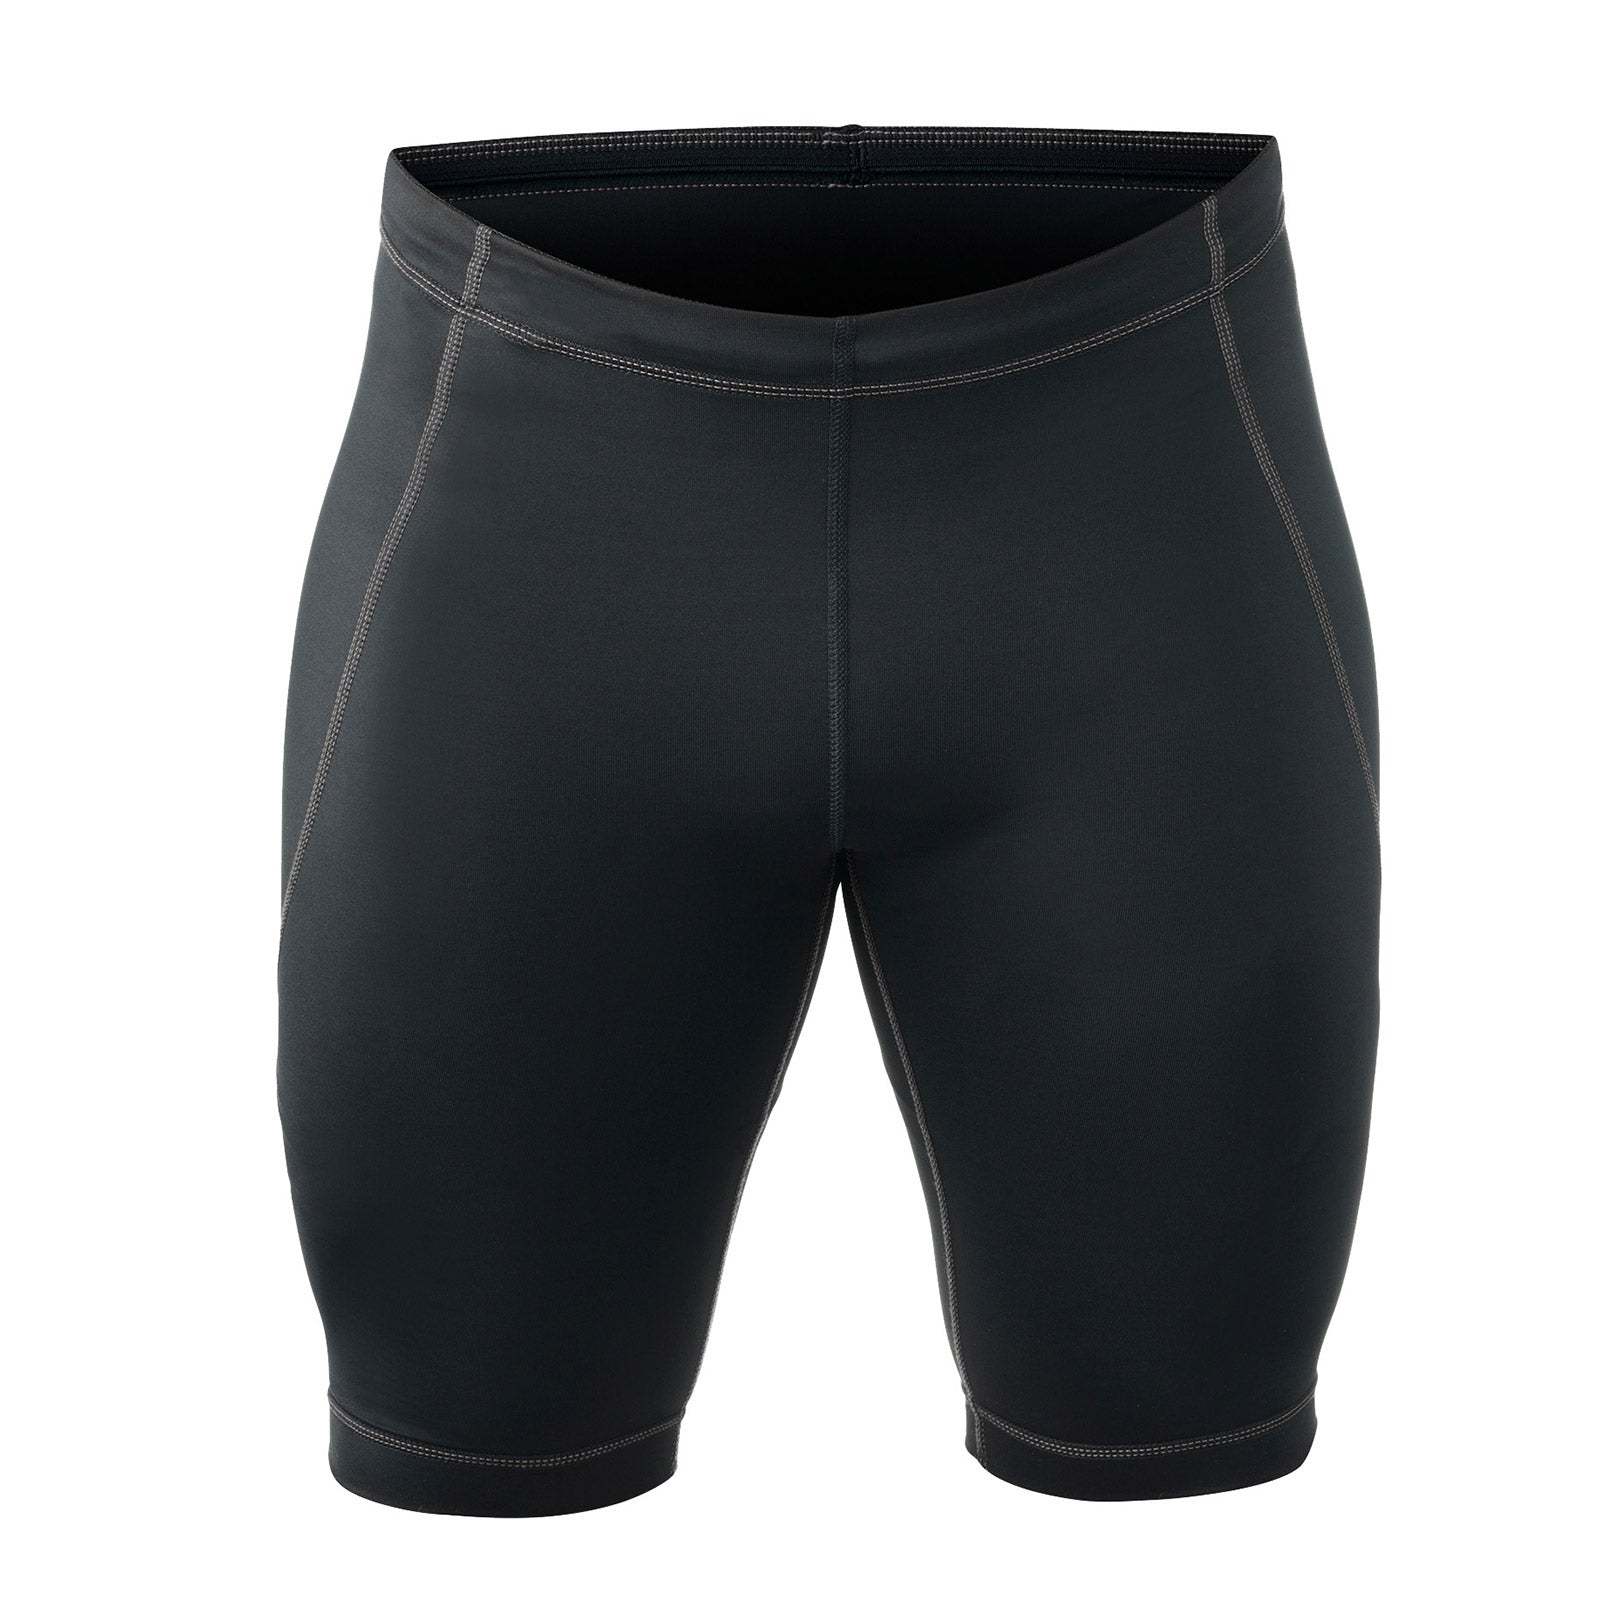 A black compressions shorts